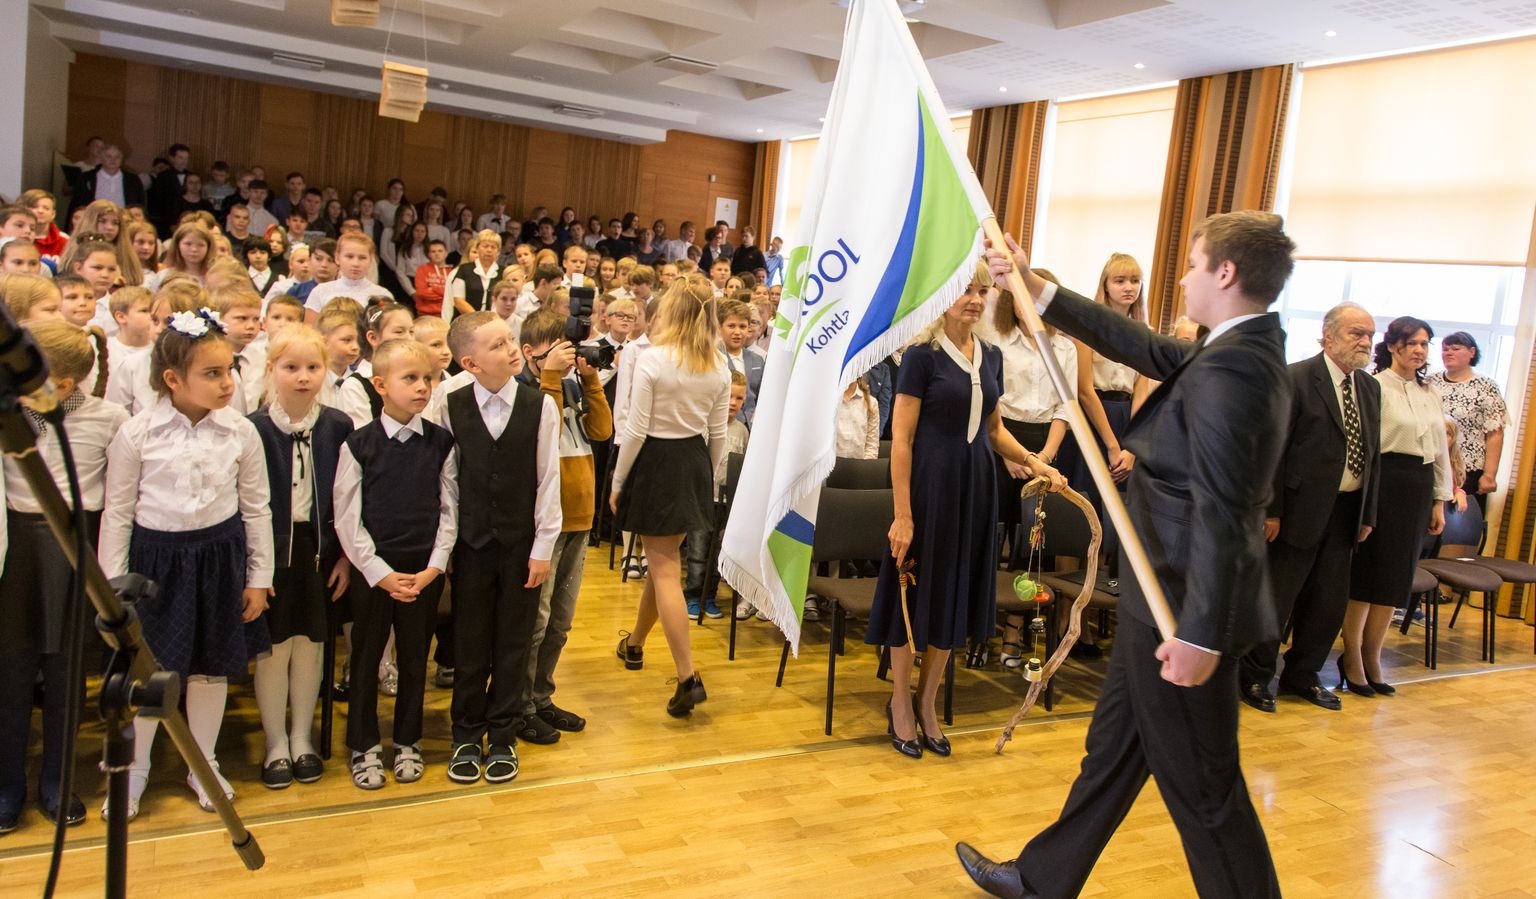 В Ярвеской школе с эстонским языком обучения из 320 учащихся у 180-ти эстонский язык не является родным. Фотография сделана в октябре, когда школа, ставшая основной, отмечала свое 97-летие и познакомила со своим новым флагом, логотипом и школьным гимном.